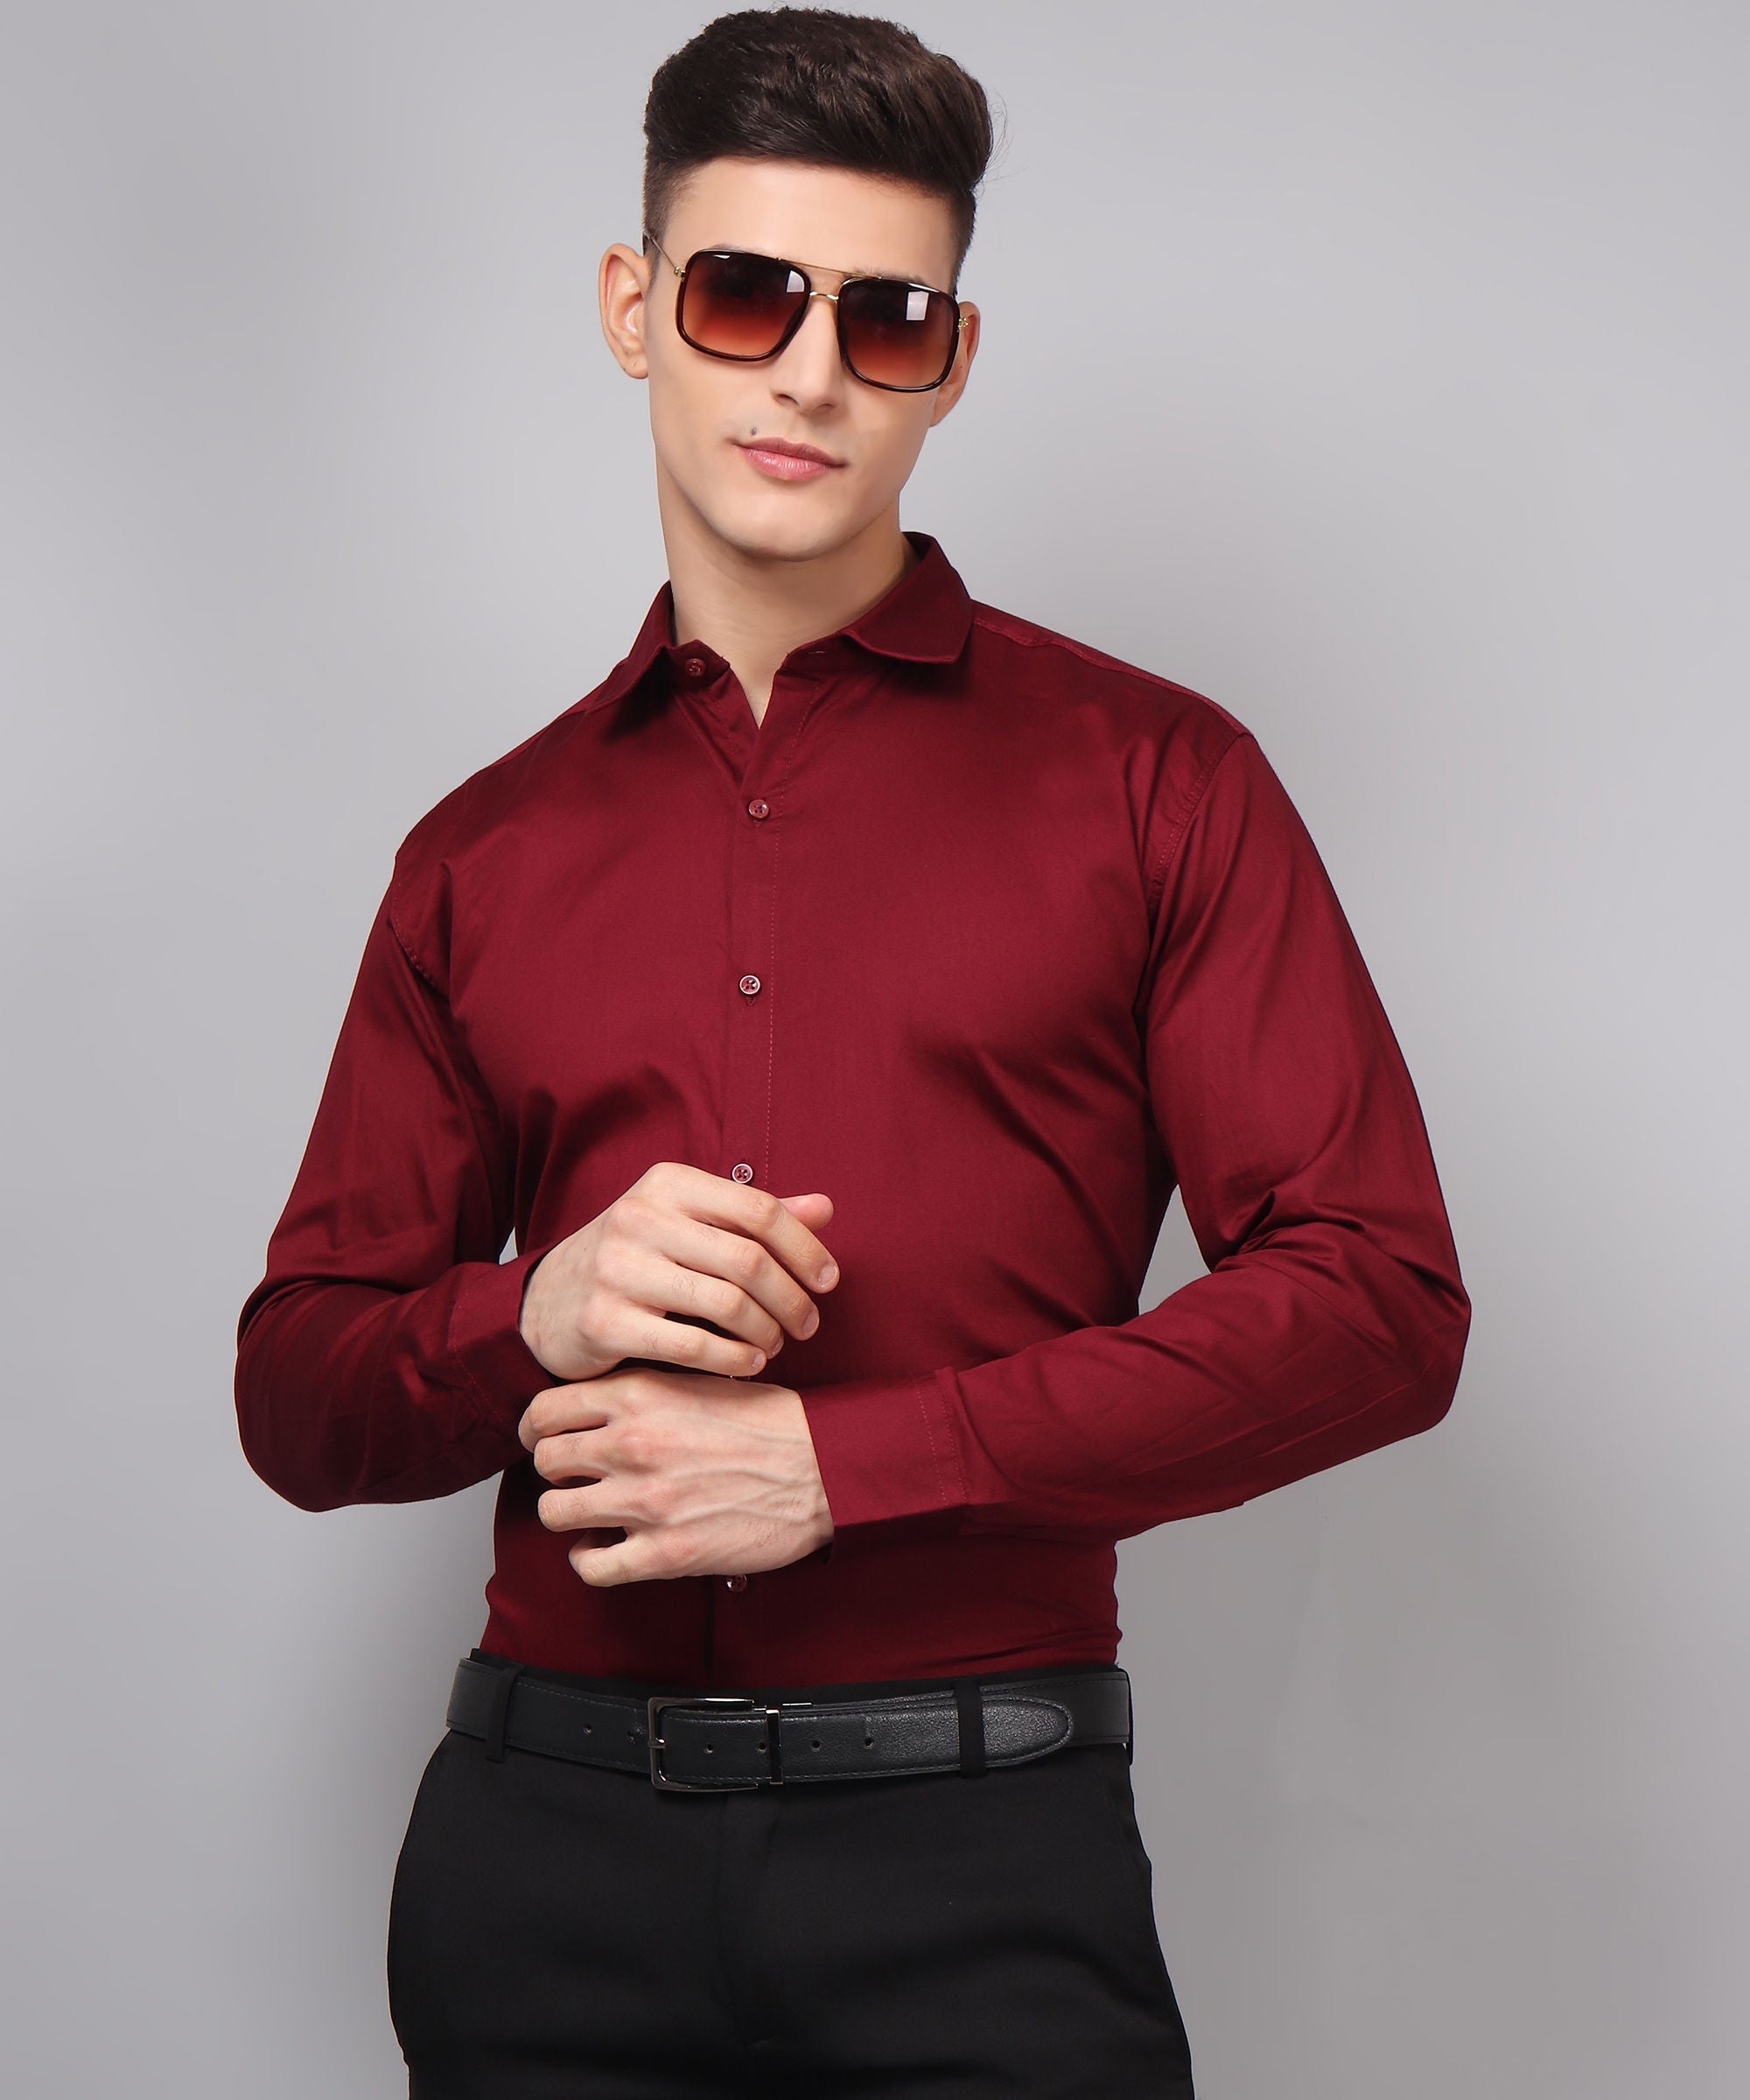 Exclusive TryBuy Premium Maroon Dress Shirt for Men